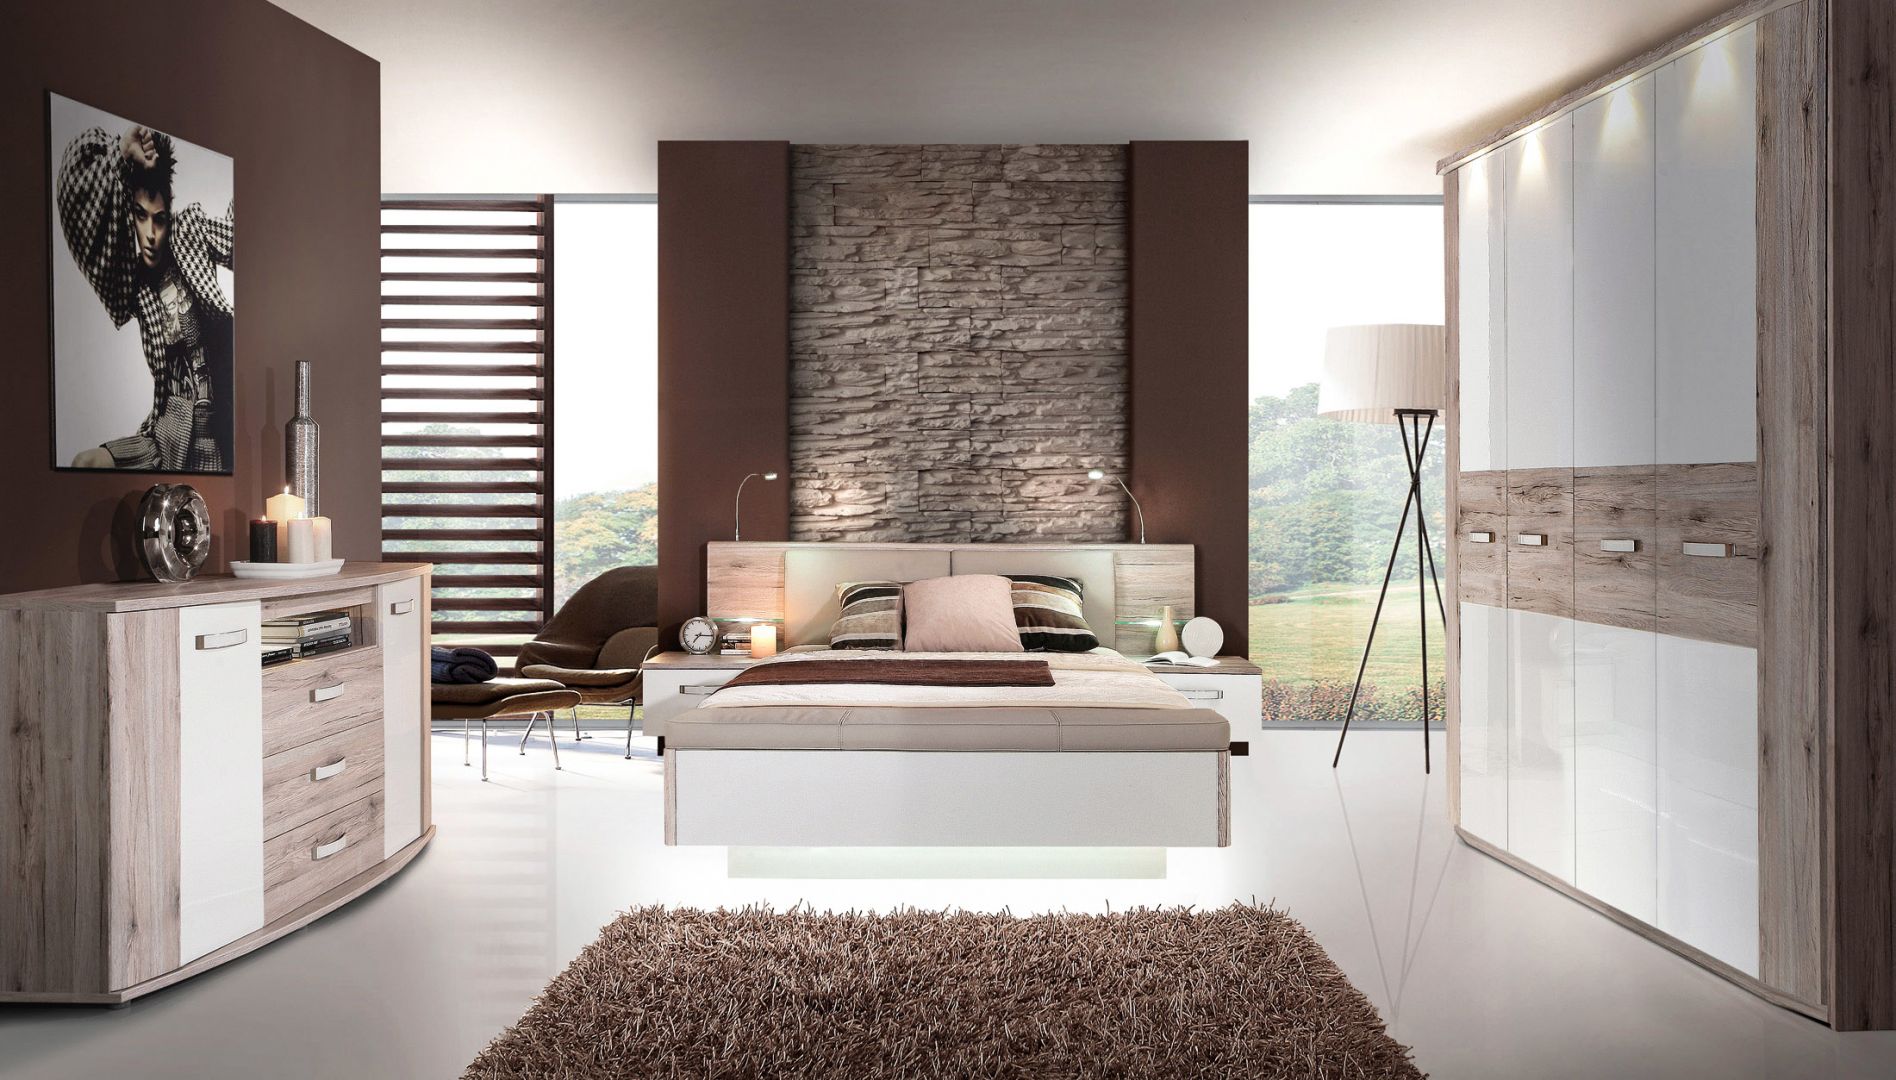 Sypialnia Rondino to meble o pięknym usłojeniu drewna. Fot. Salony Agata 